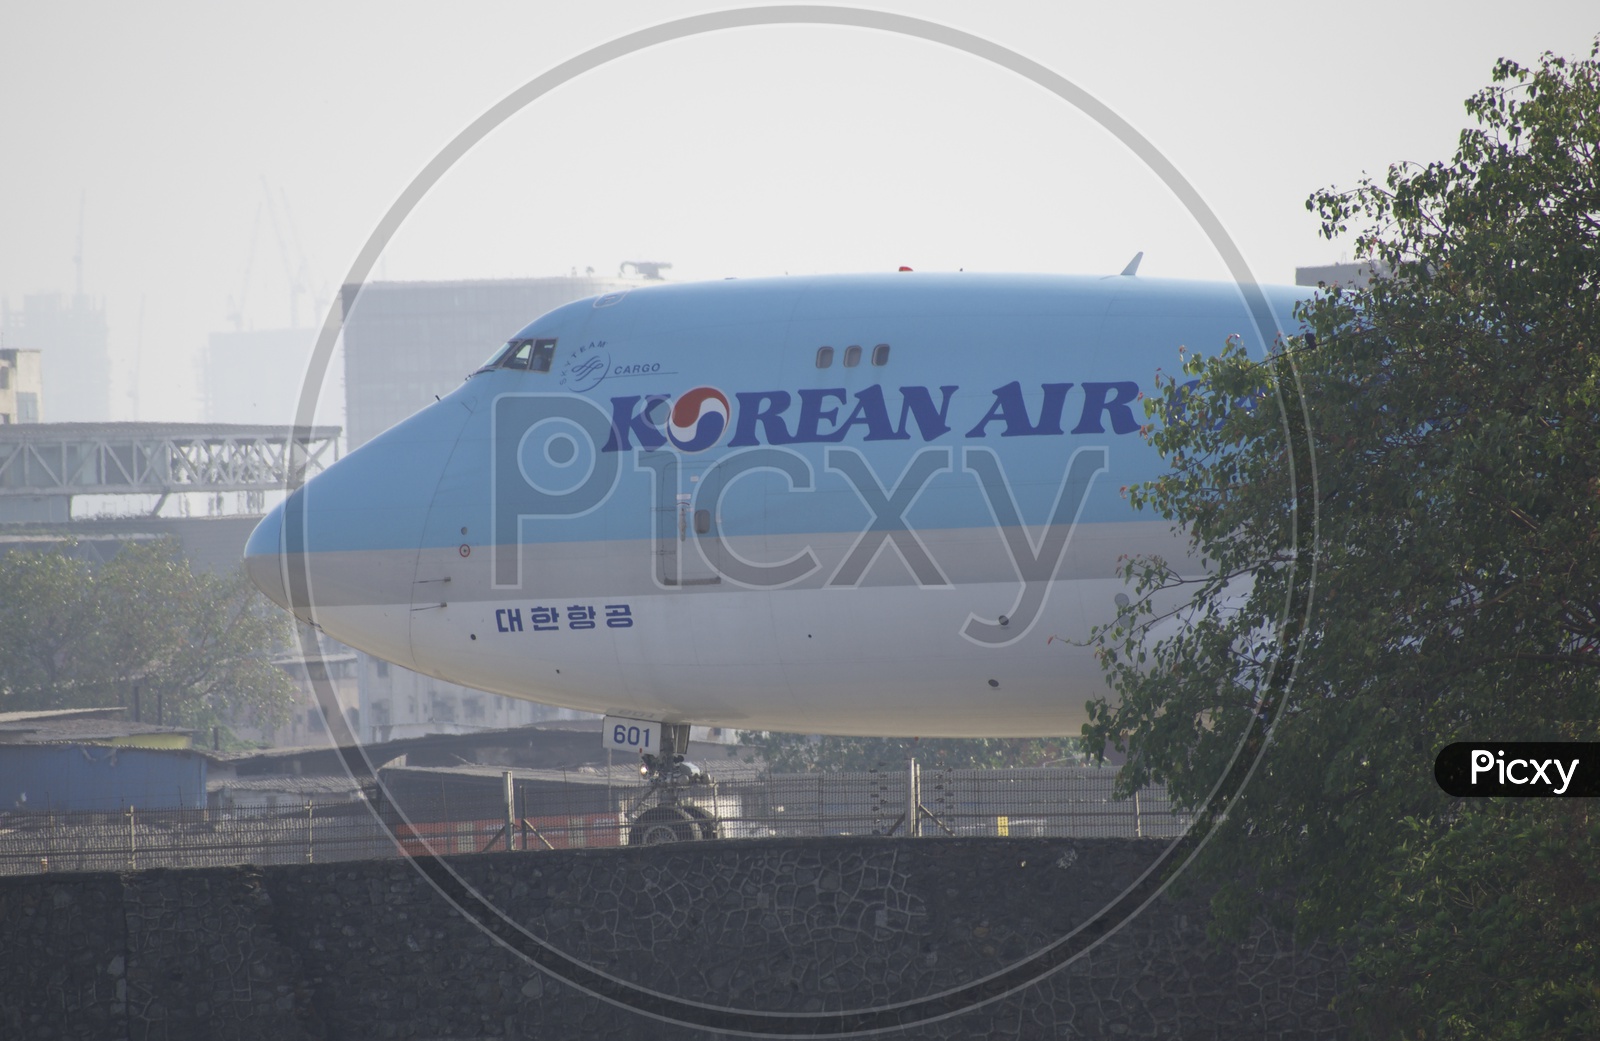 Korean Air 747